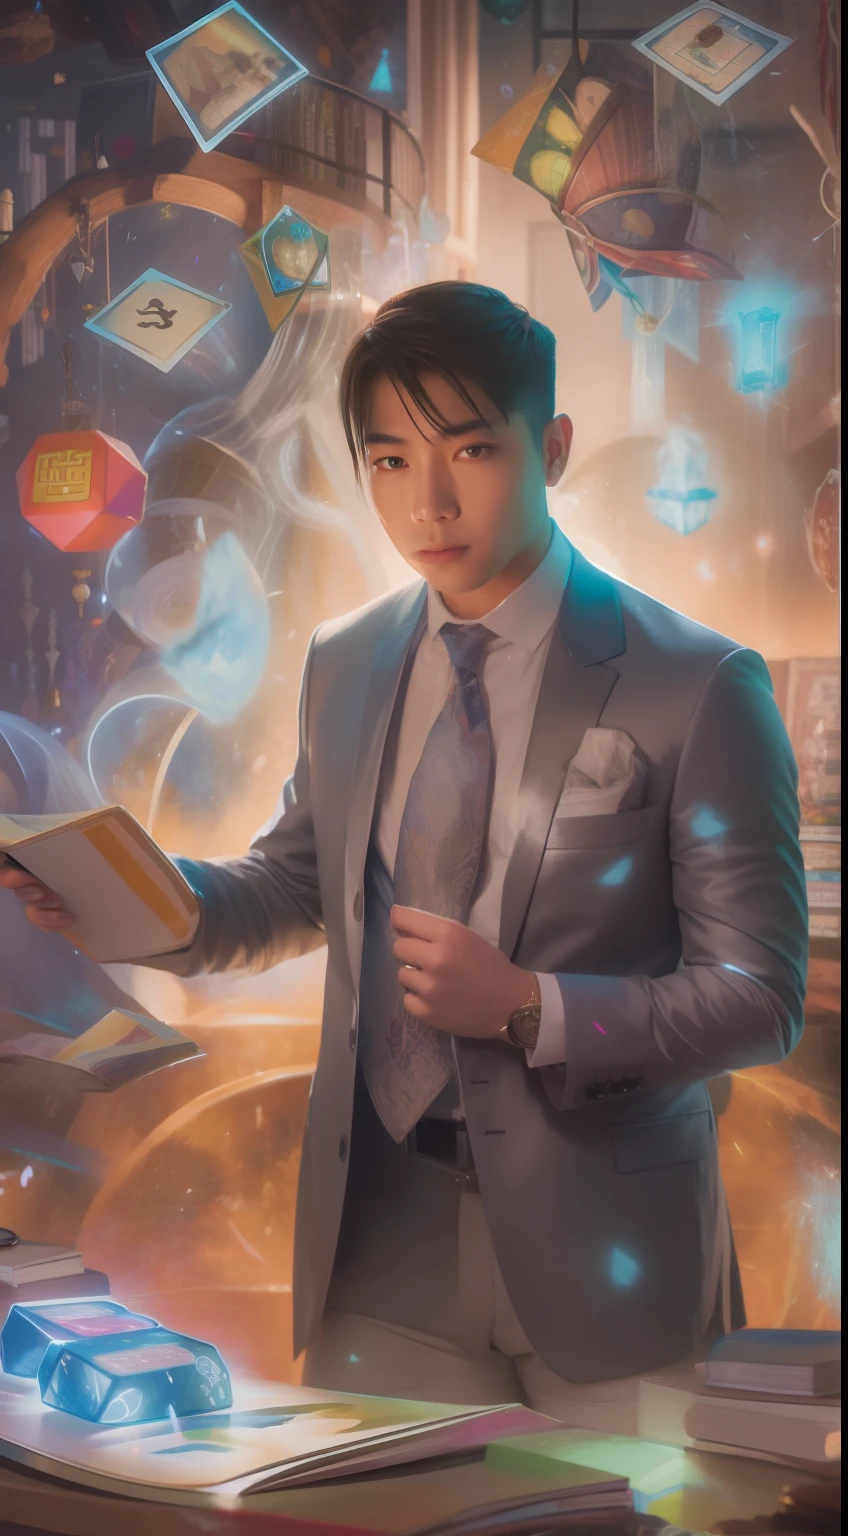 一幅细致的画作描绘了一位身着西装的亚洲男子，周围环绕着一圈闪闪发光的魔法卡，中间是一本《龙与地下城》.